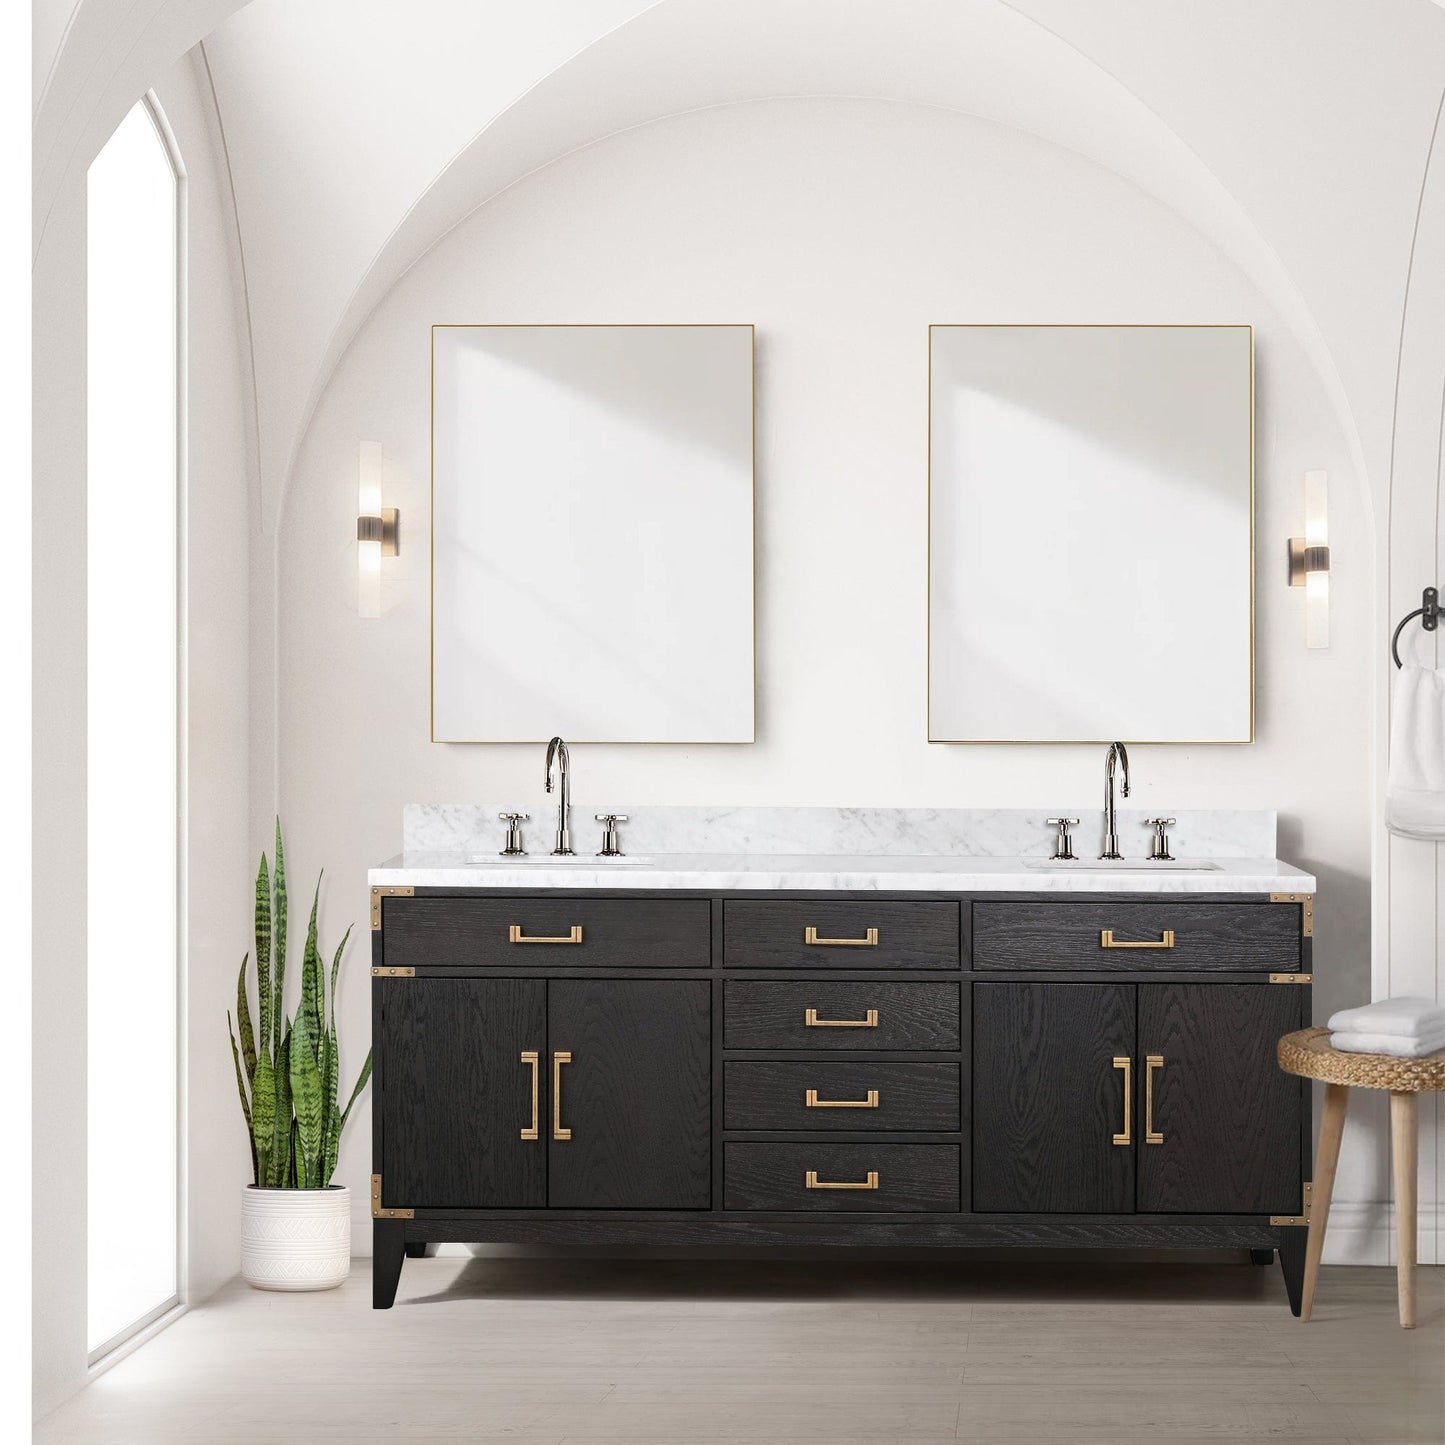 Lexora Bathroom Vanity Black Oak / No Faucet / No Mirror Laurel 72 " x 22" Double Bath Vanity